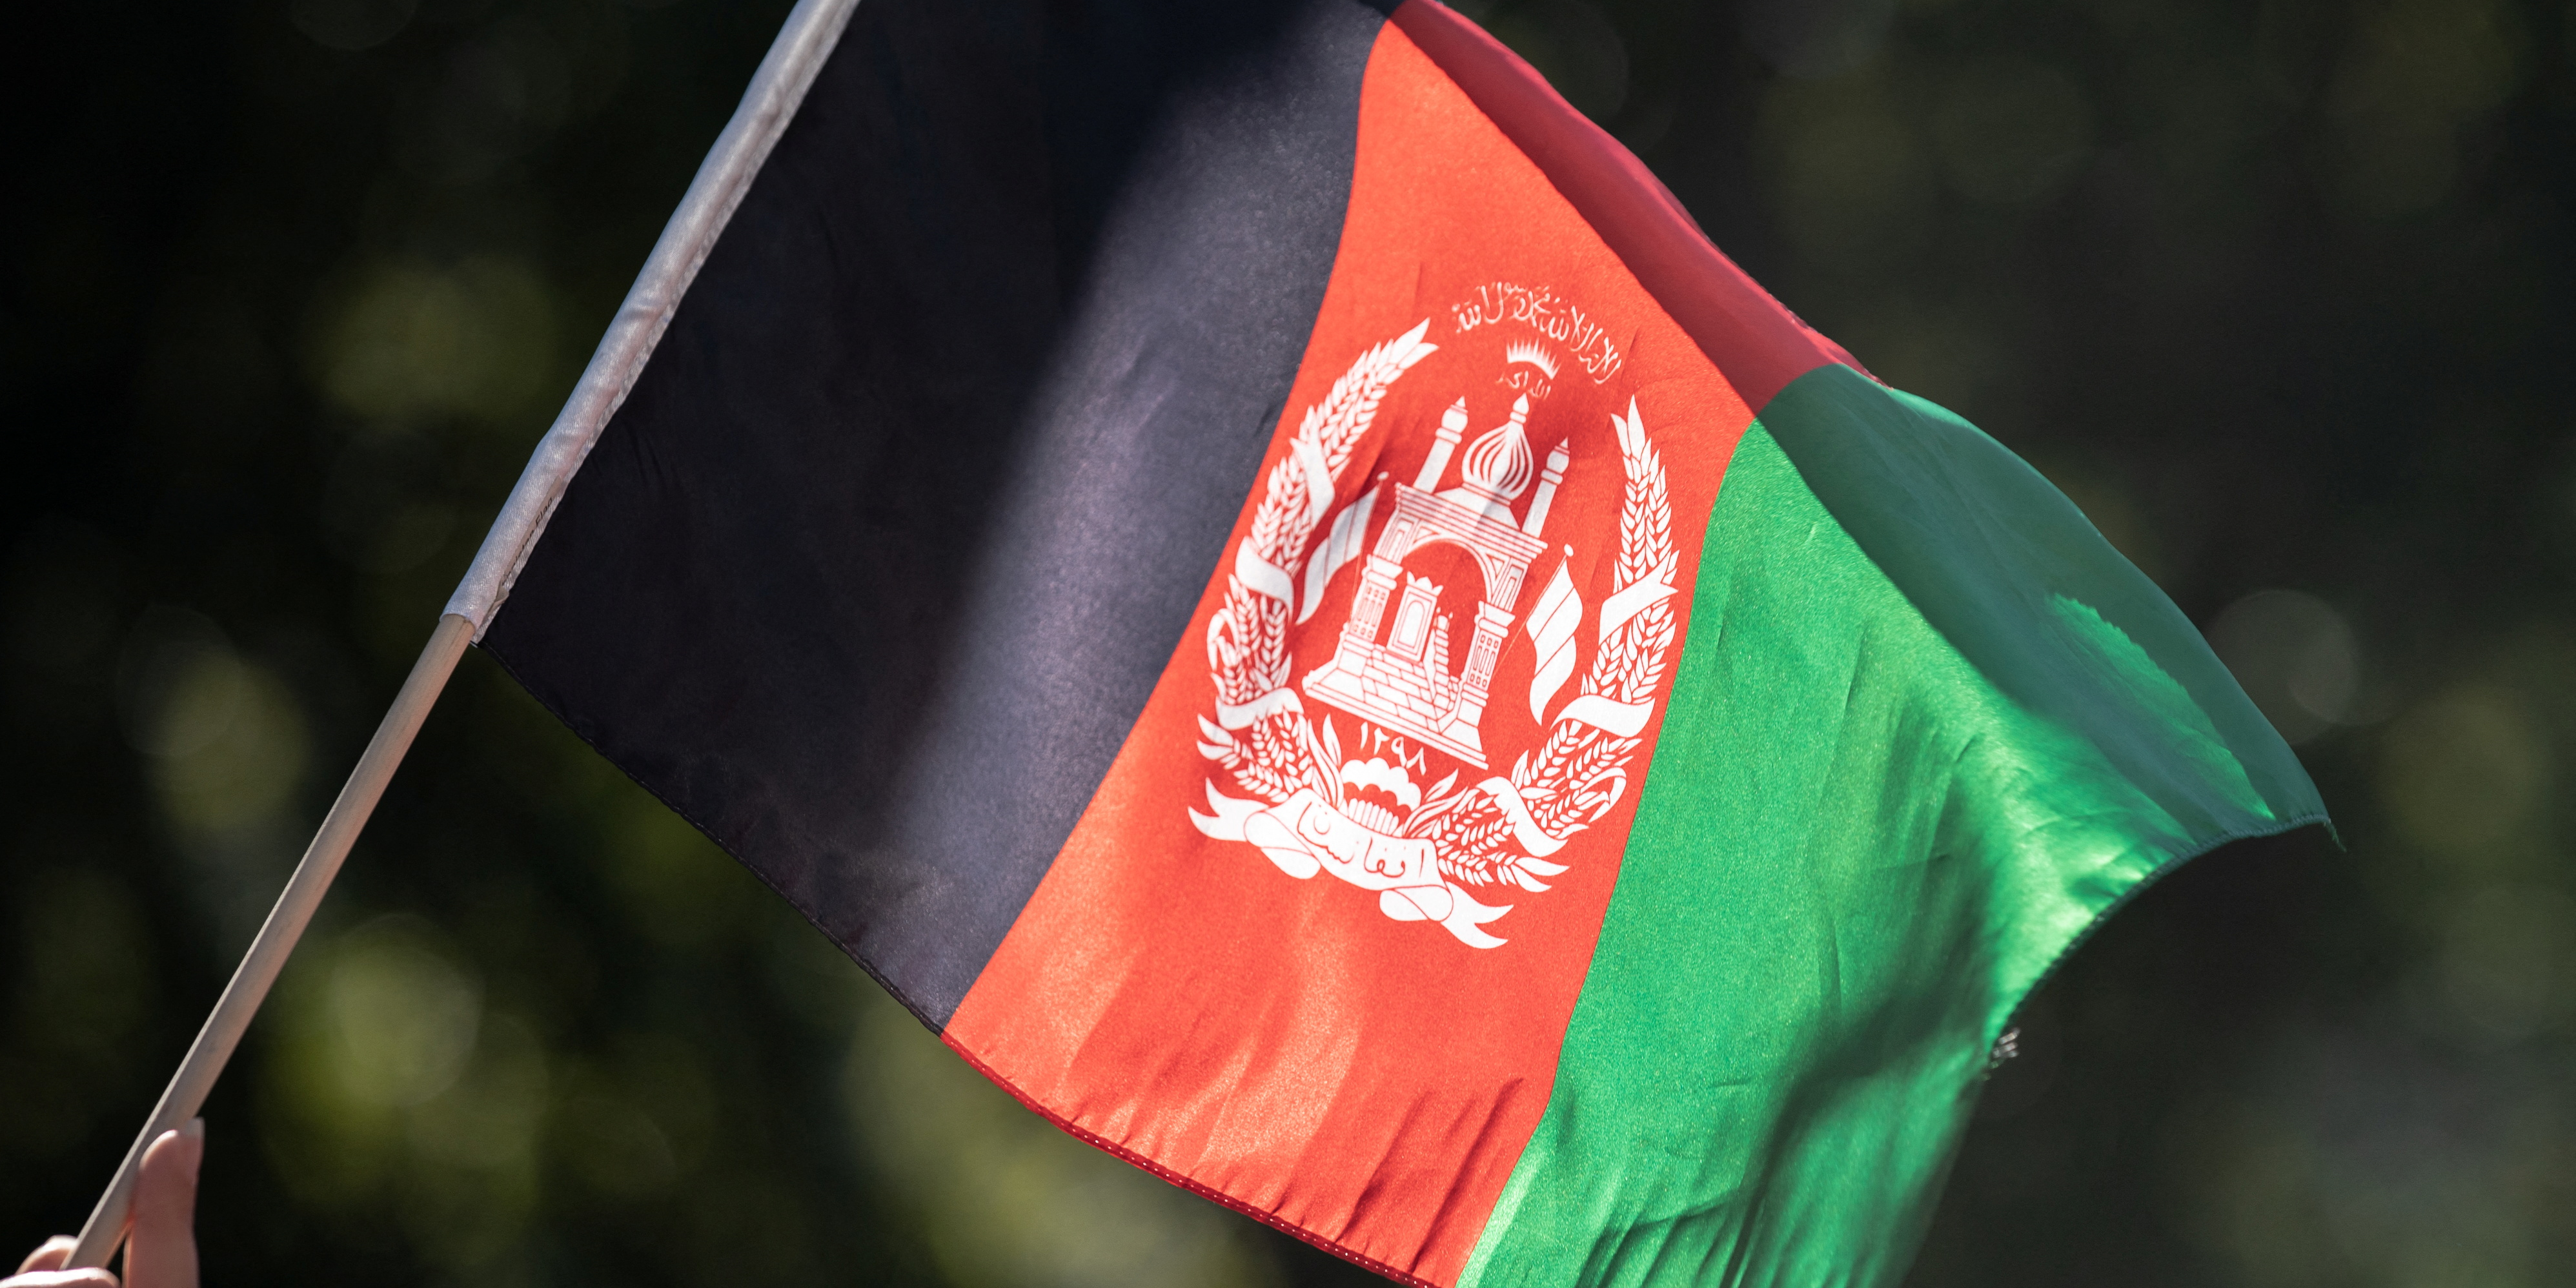 Pénuries alimentaires, chômage, éducation : l'économie afghane vacille depuis l'arrivée des talibans